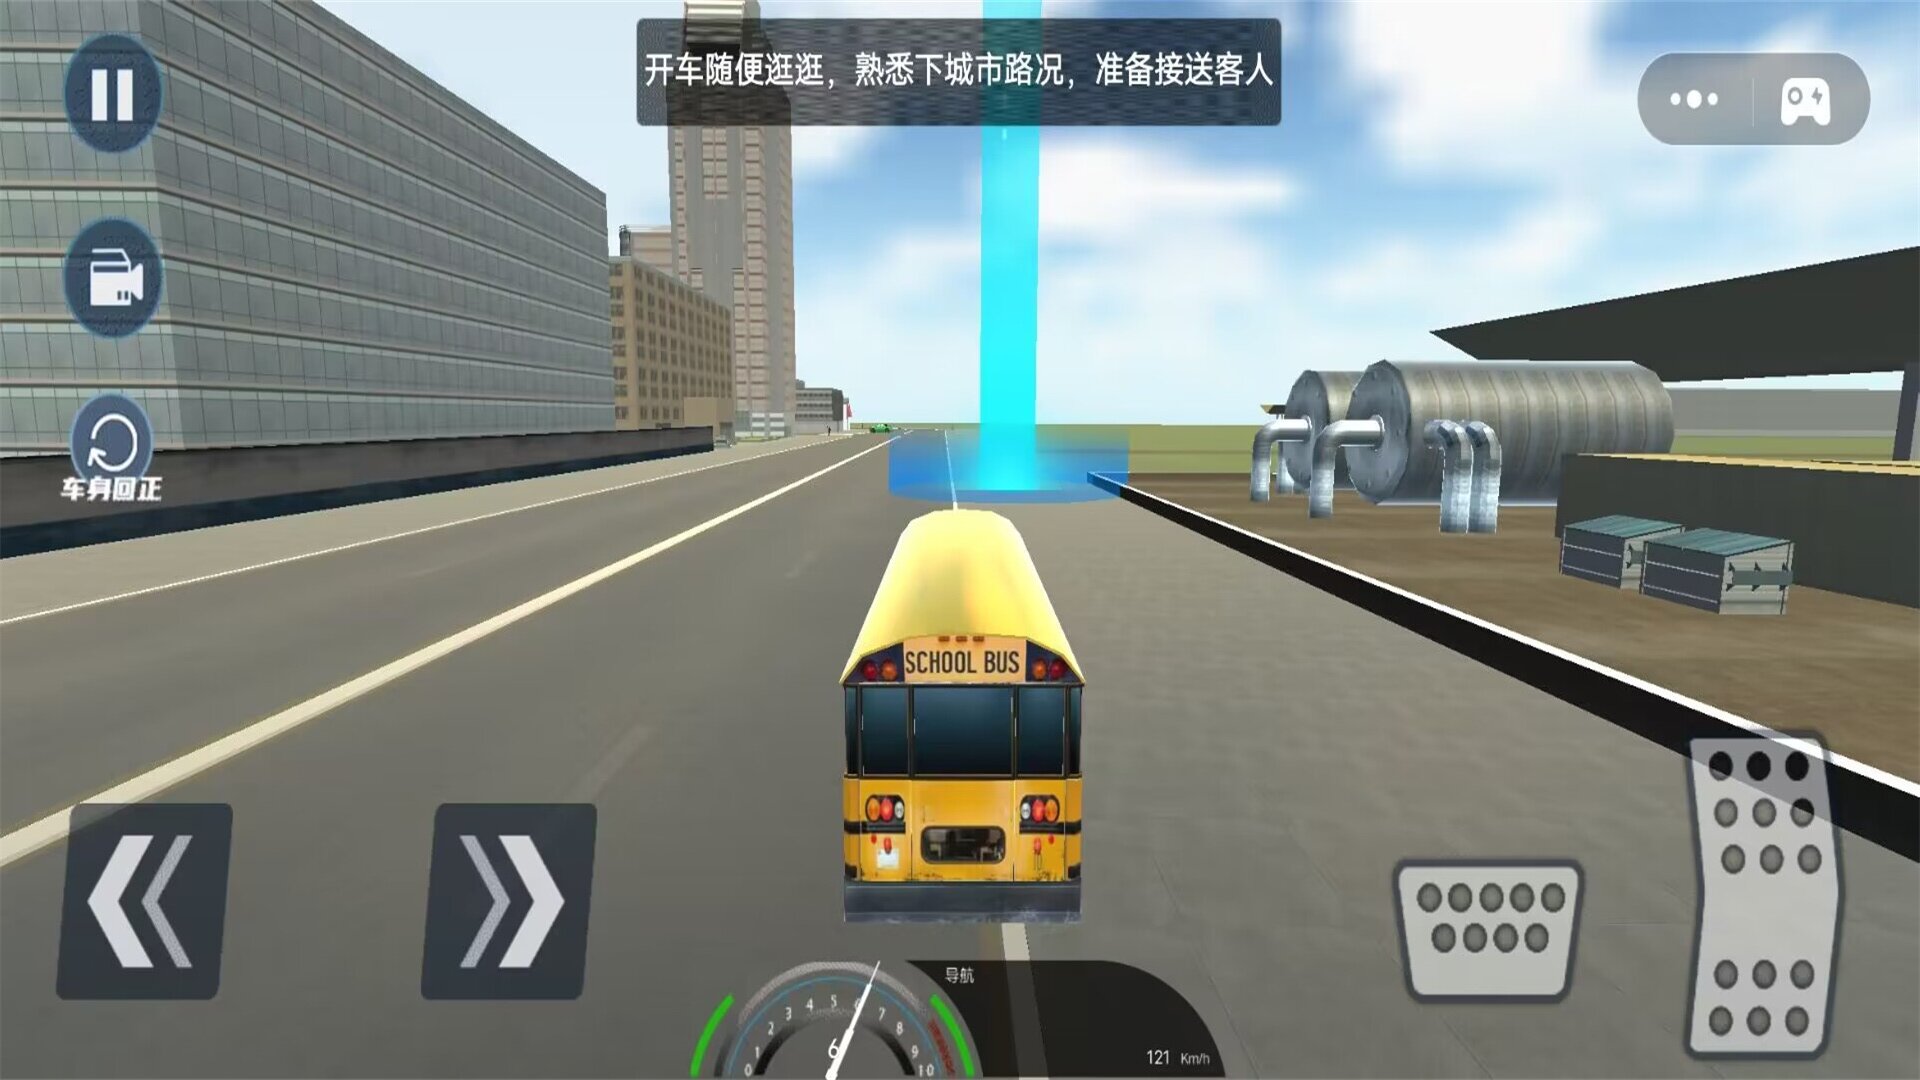 校车大巴驾驶模拟游戏官方下载  v1.0截图